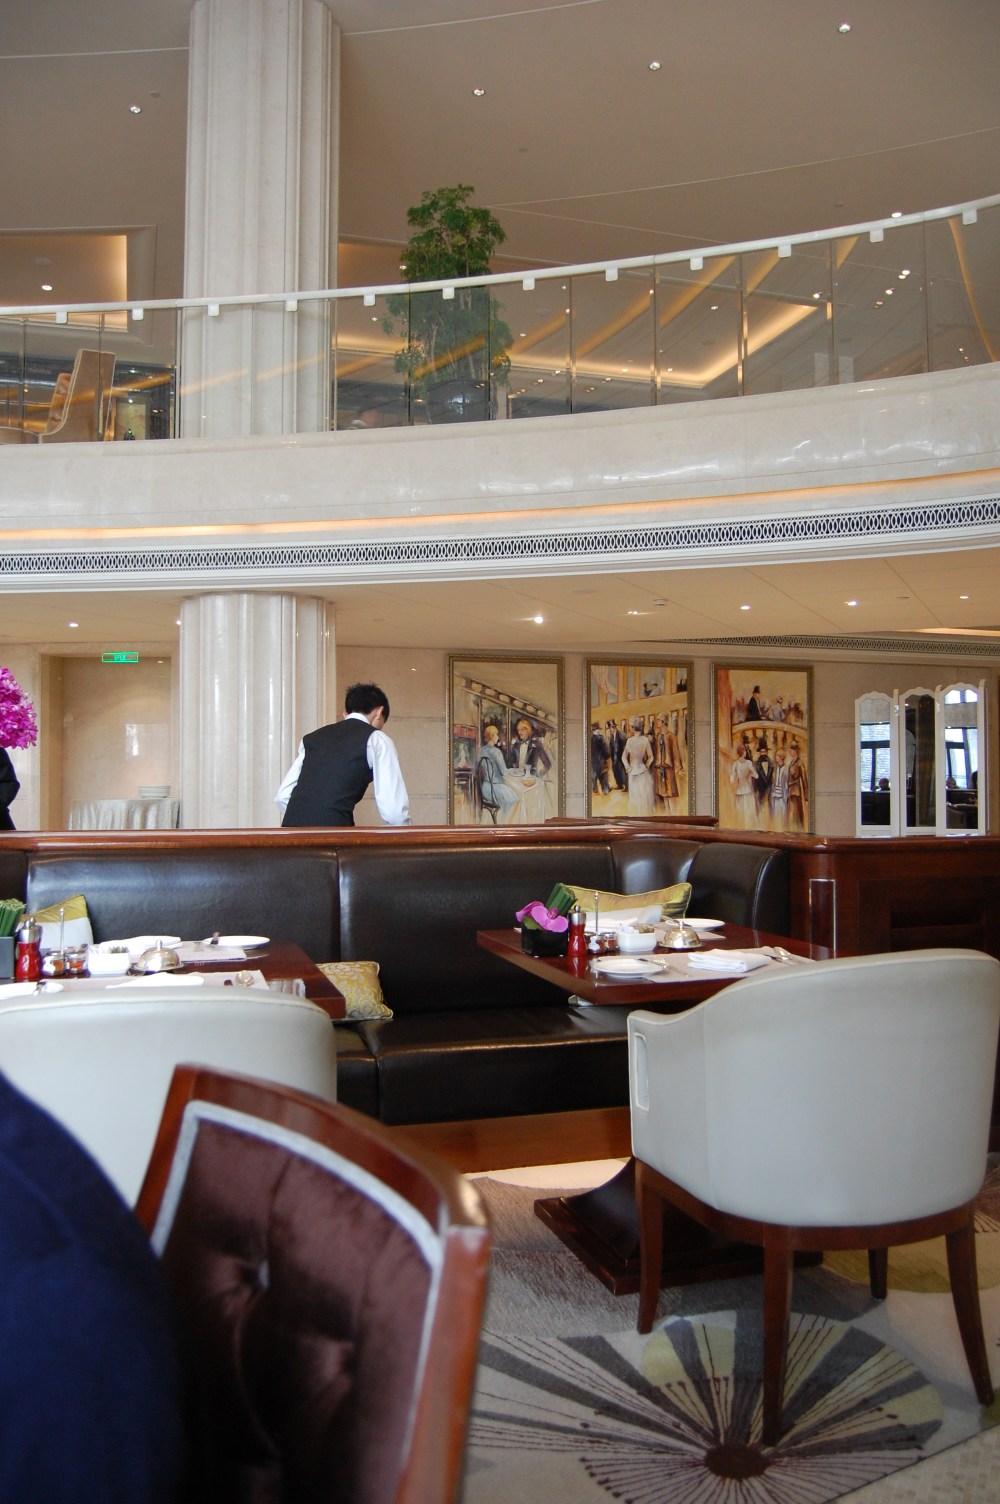 上海华尔道夫酒店(The Waldorf Astoria OnTheBund)(HBA)10.9第10页更新_DSC_0616.JPG